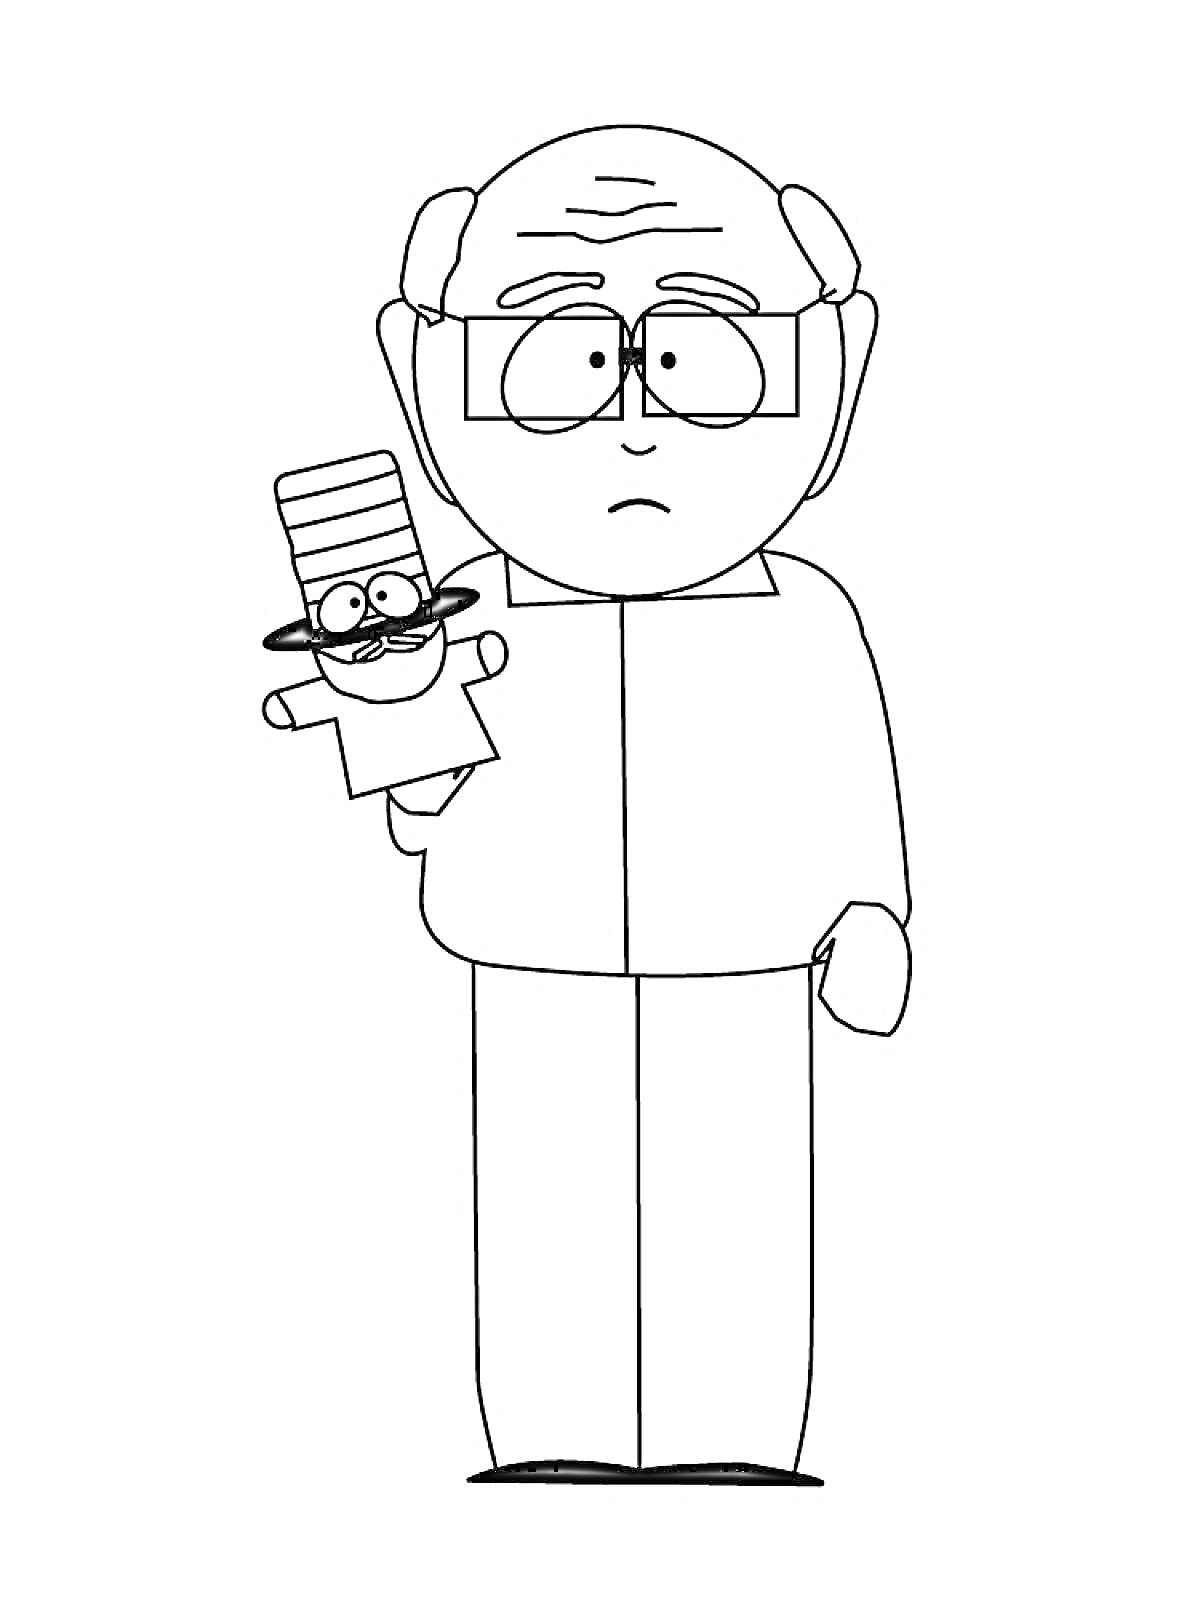 Мужчина в очках и пиджаке с куклой на руке из Южного Парка